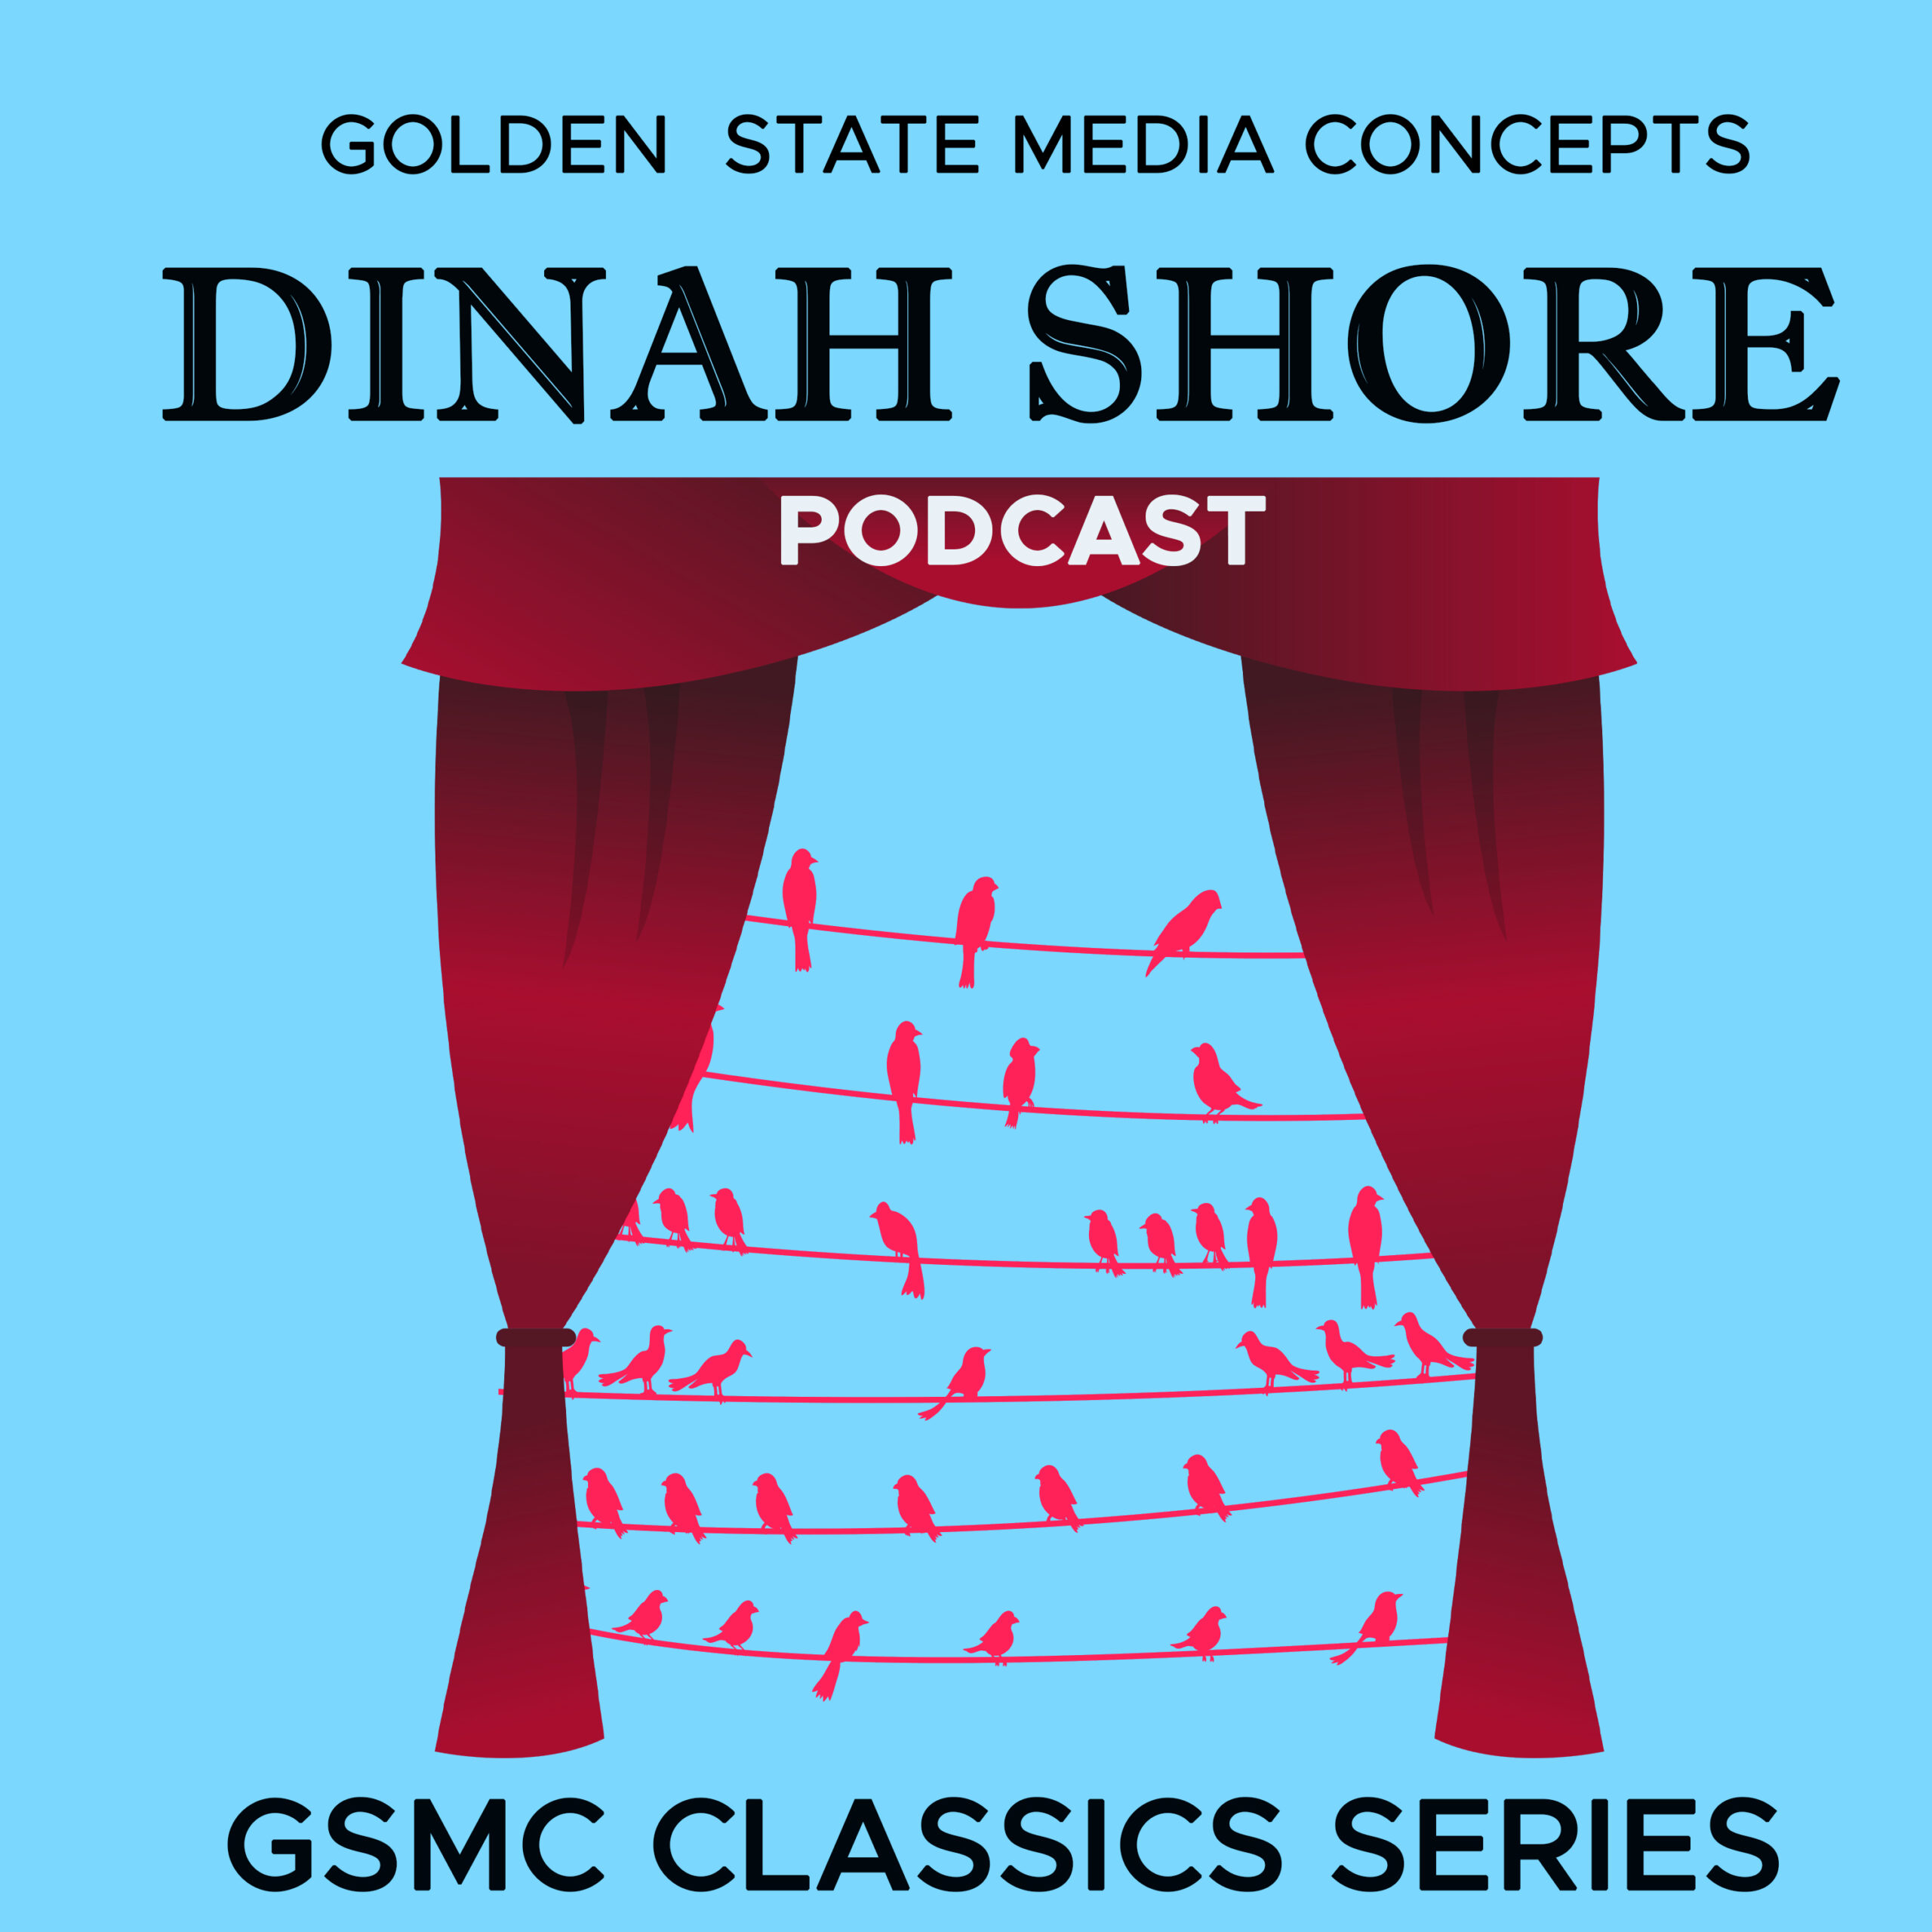 GSMC Classics: Dinah Shore